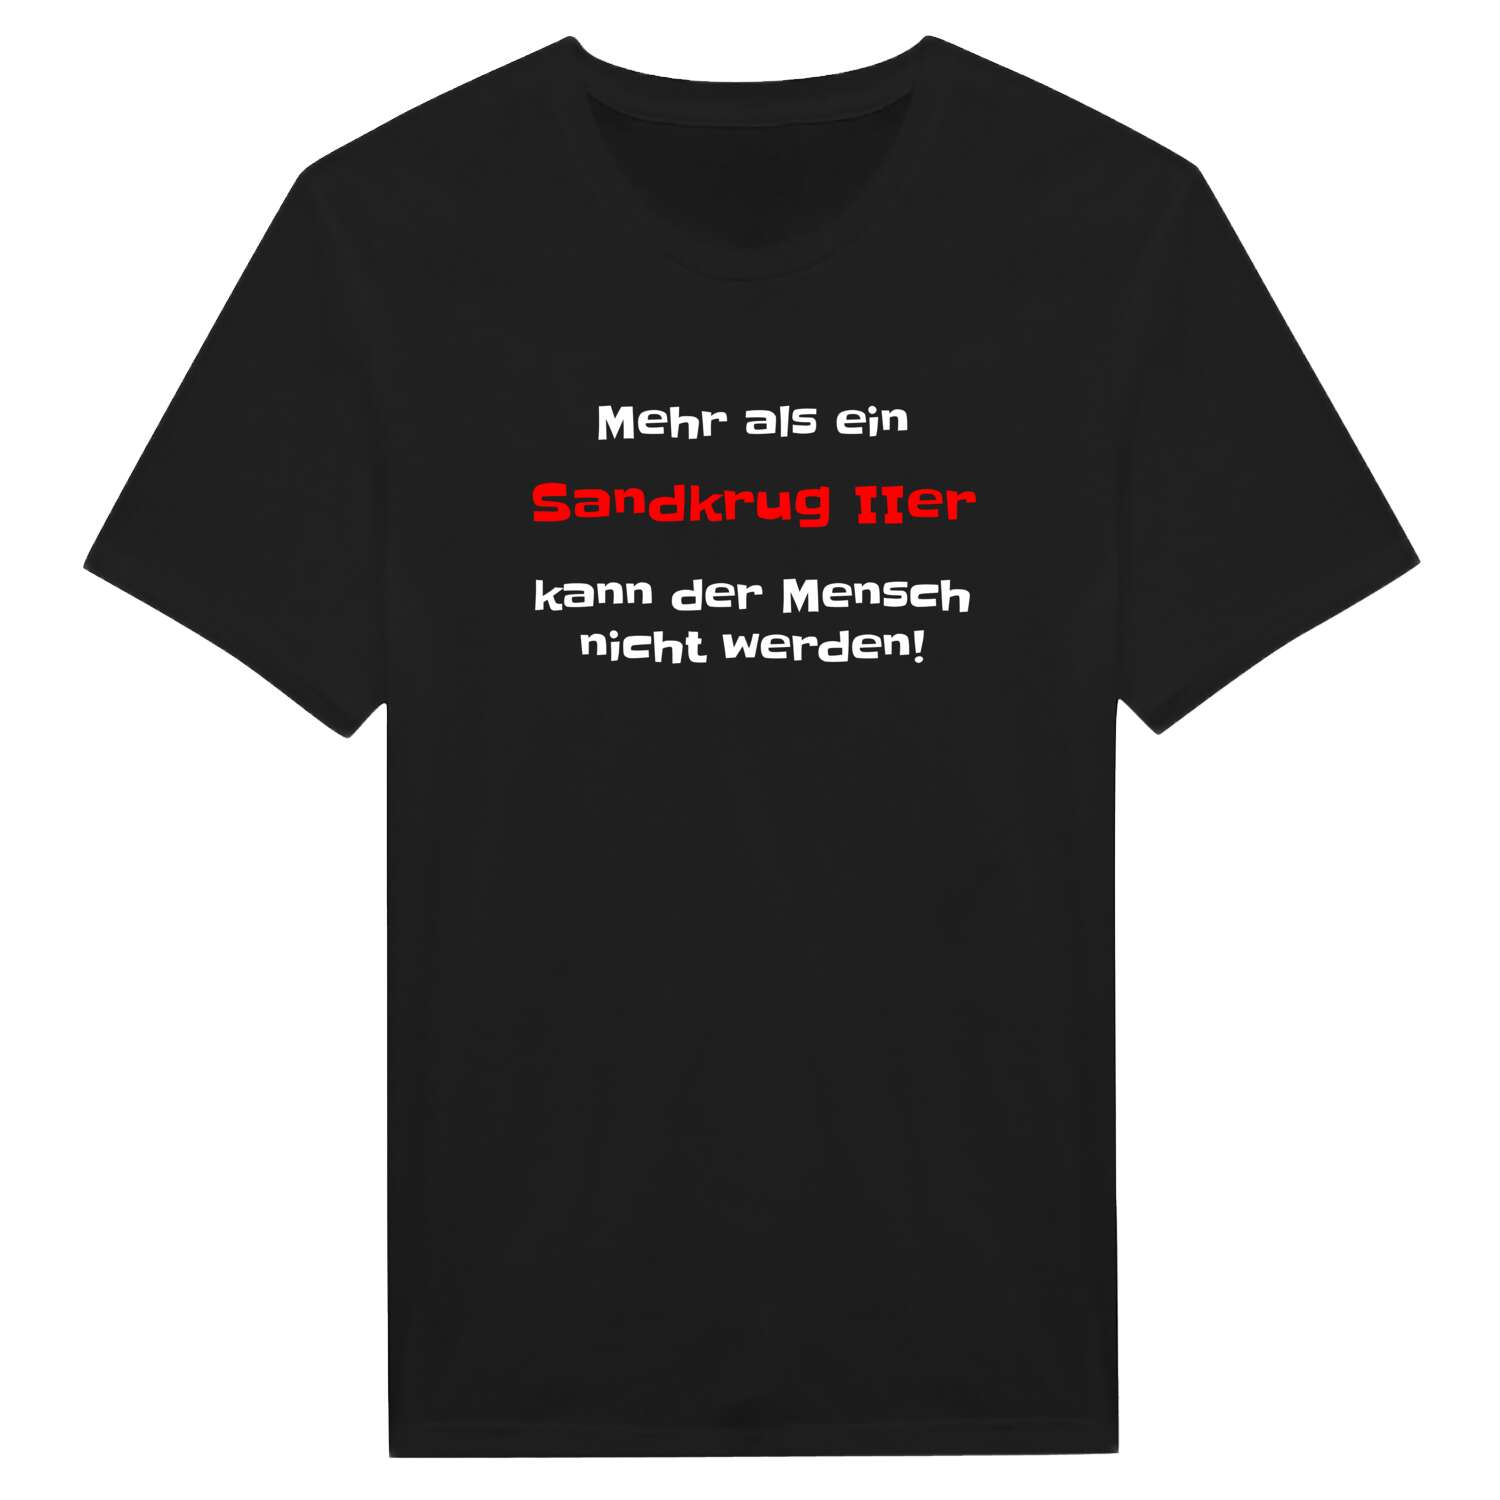 Sandkrug II T-Shirt »Mehr als ein«